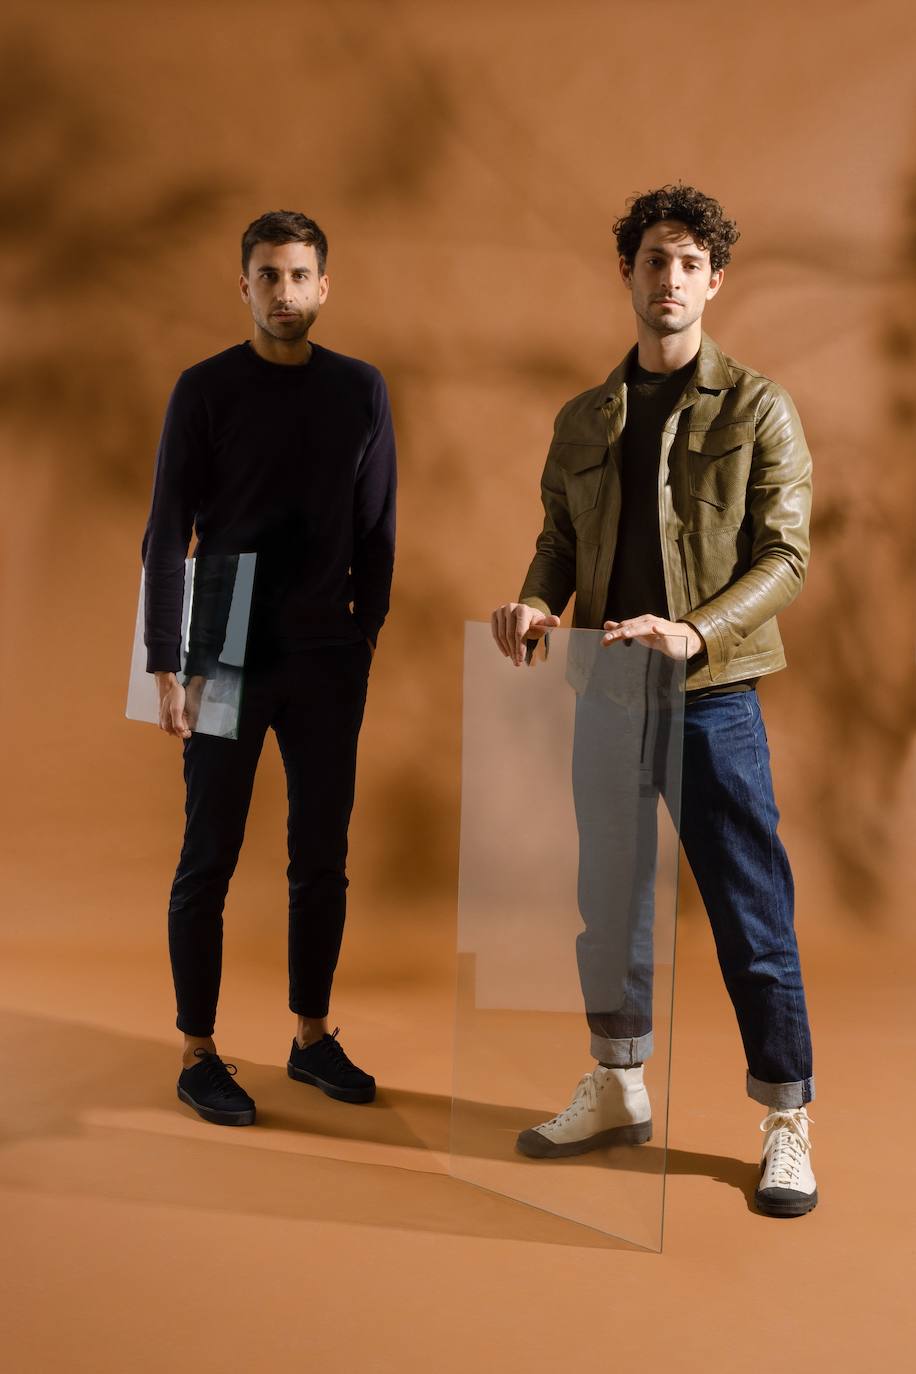 Adrián Salvador y Lucas Zaragosí son Estudio Savage, una de las grandes firmas de moda valenciana.